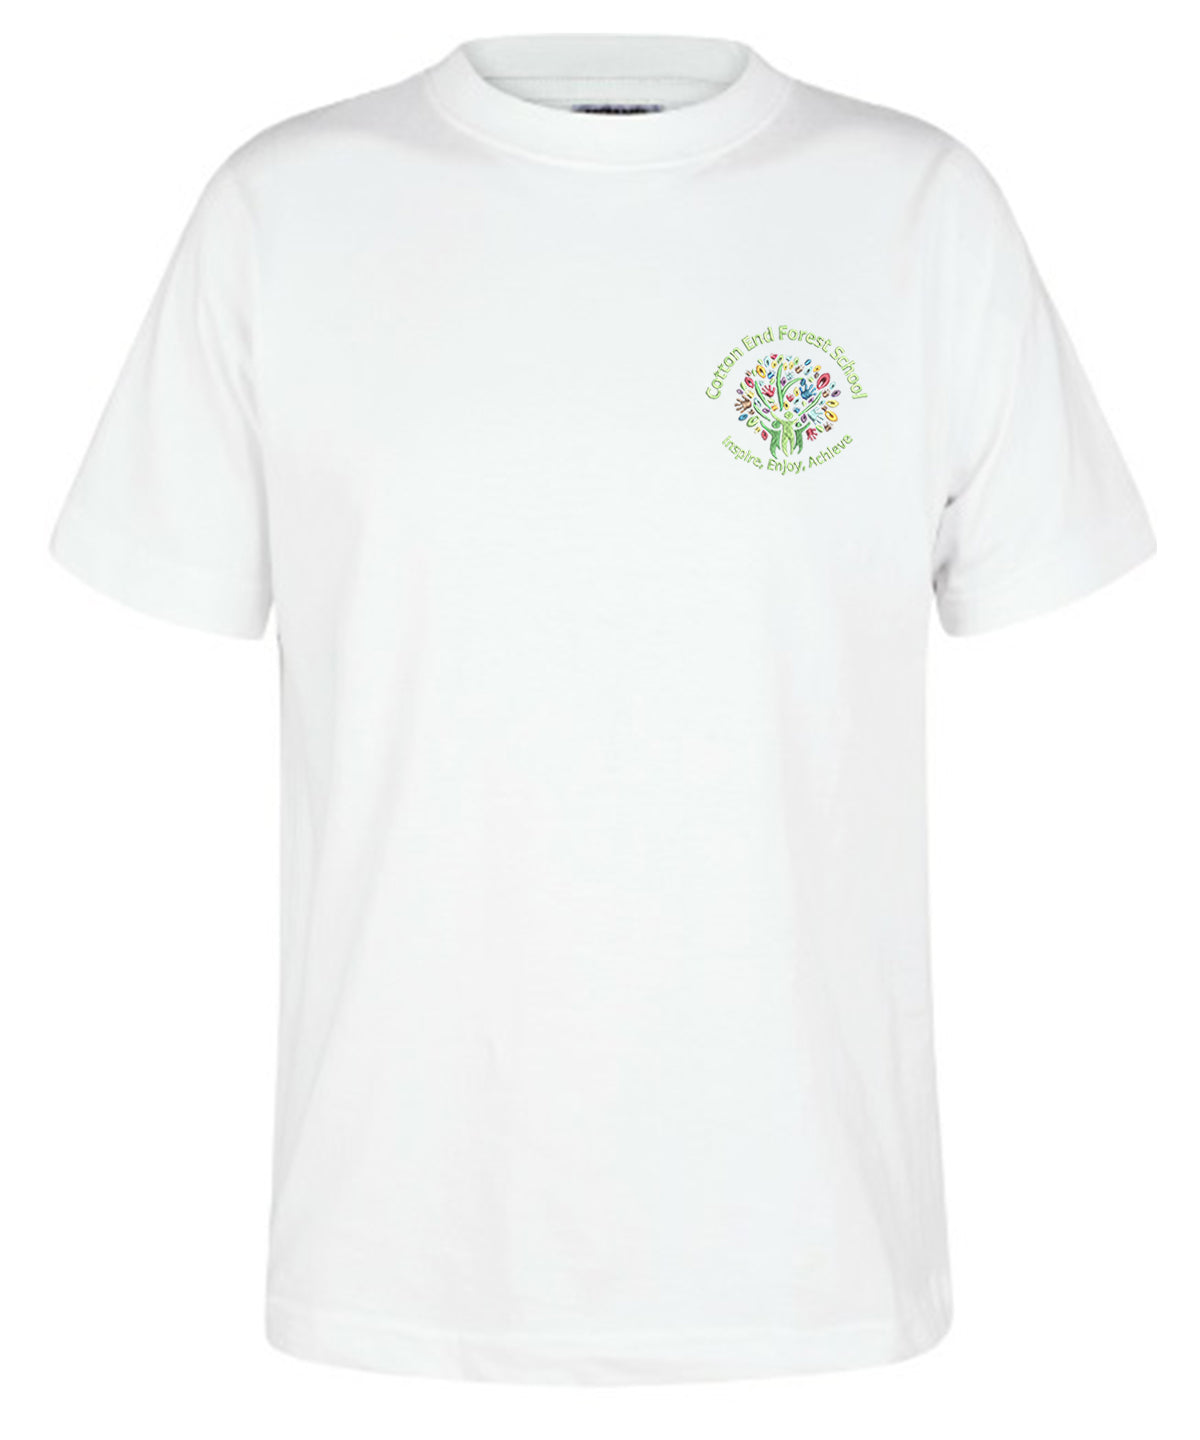 Cotton End Forest School - Unisex Cotton T-Shirt